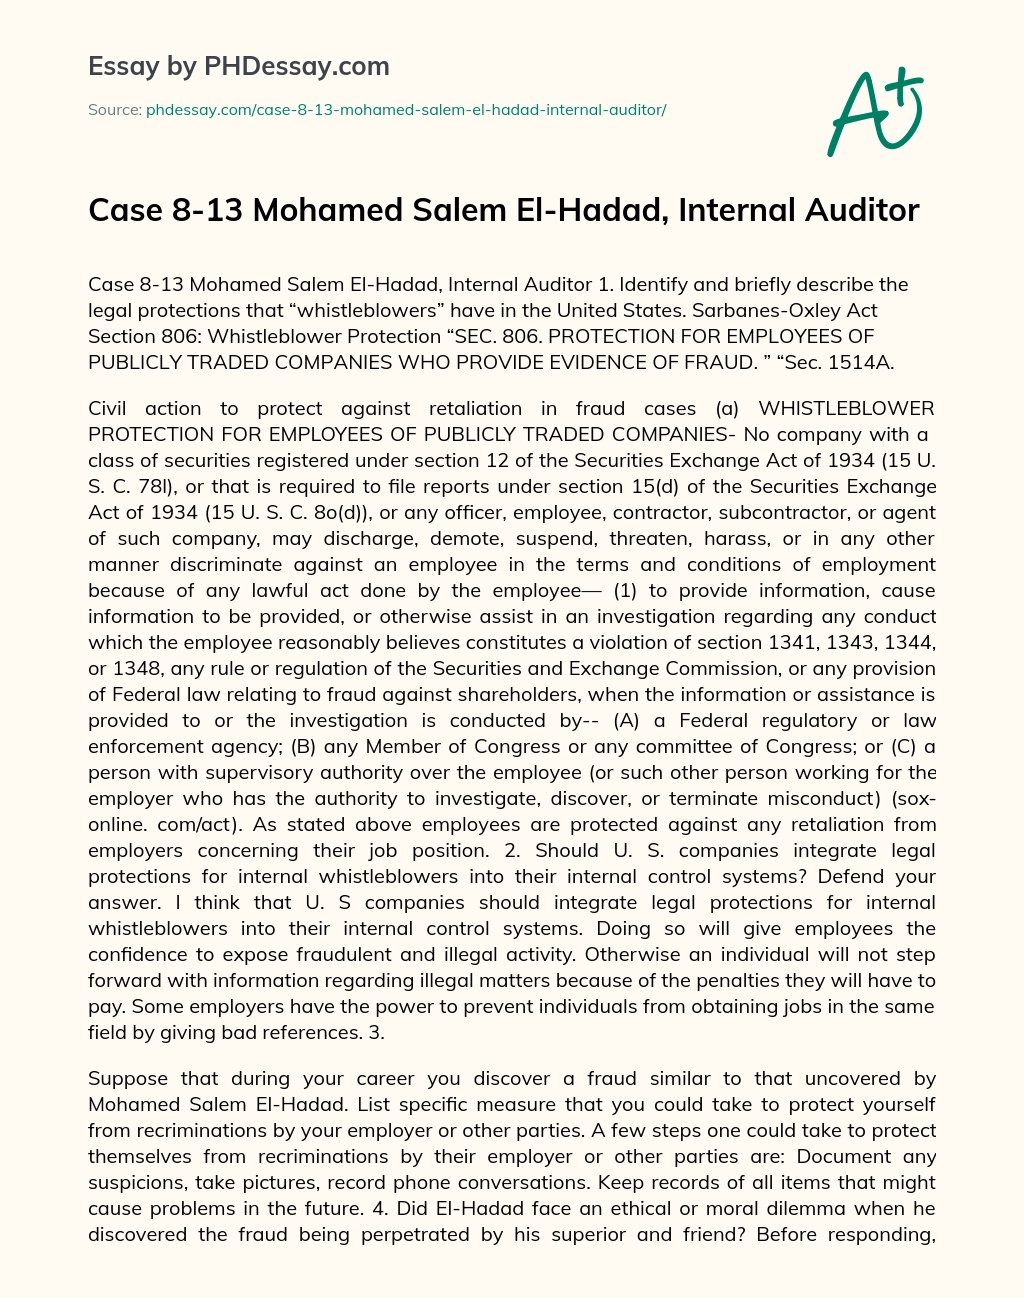 Mohamed Salem El-Hadad, Internal Auditor essay